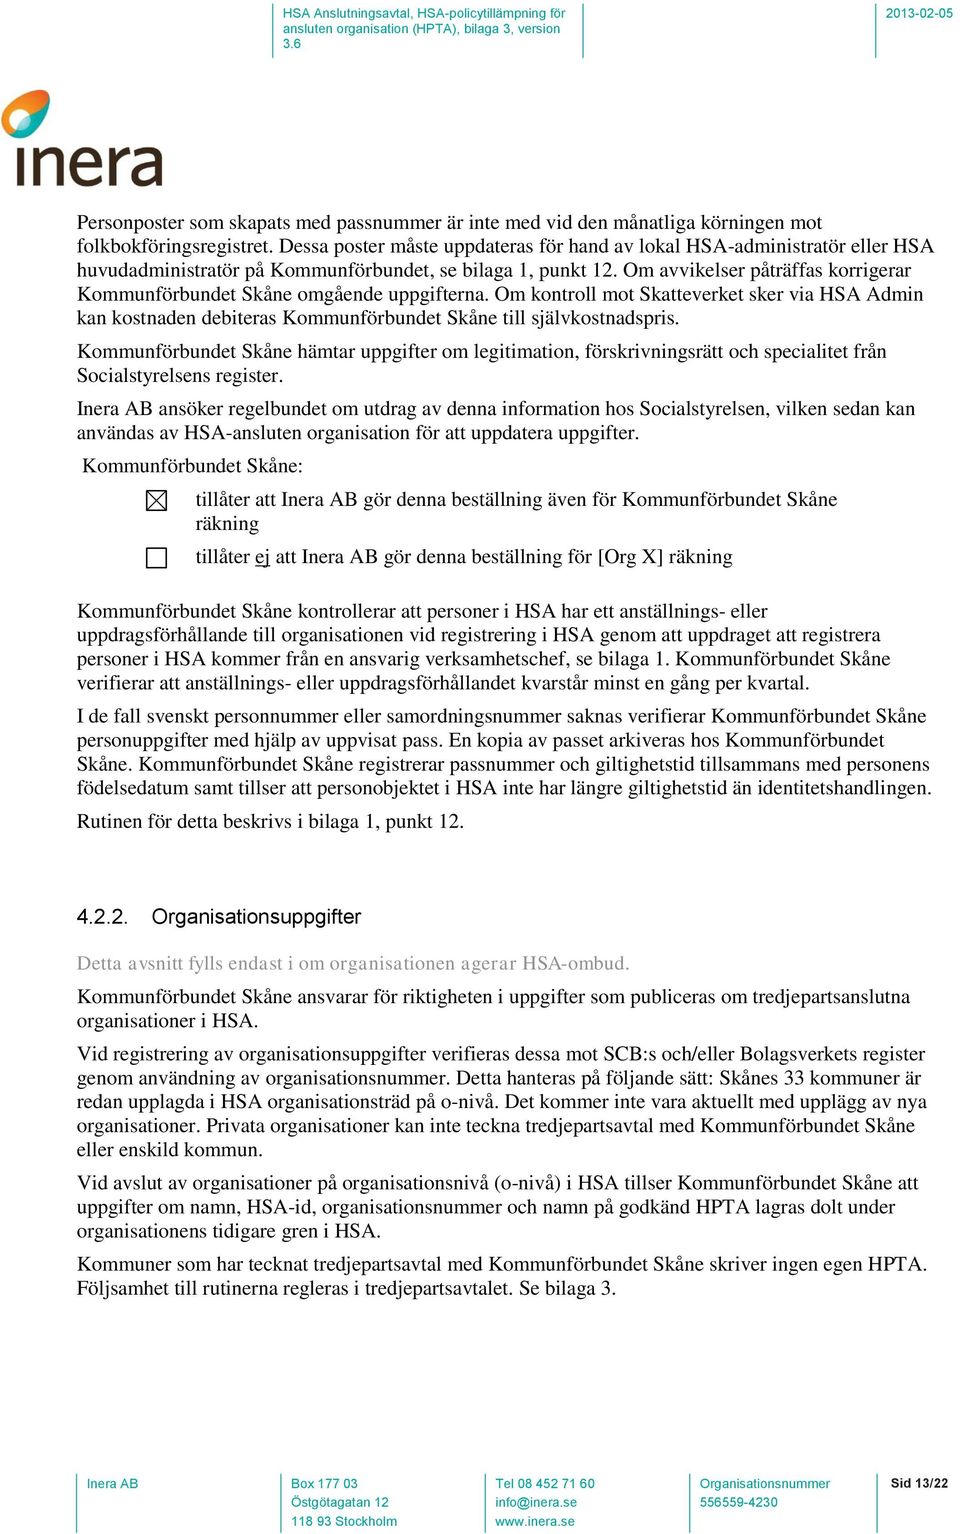 Om avvikelser påträffas korrigerar Kommunförbundet Skåne omgående uppgifterna. Om kontroll mot Skatteverket sker via HSA Admin kan kostnaden debiteras Kommunförbundet Skåne till självkostnadspris.